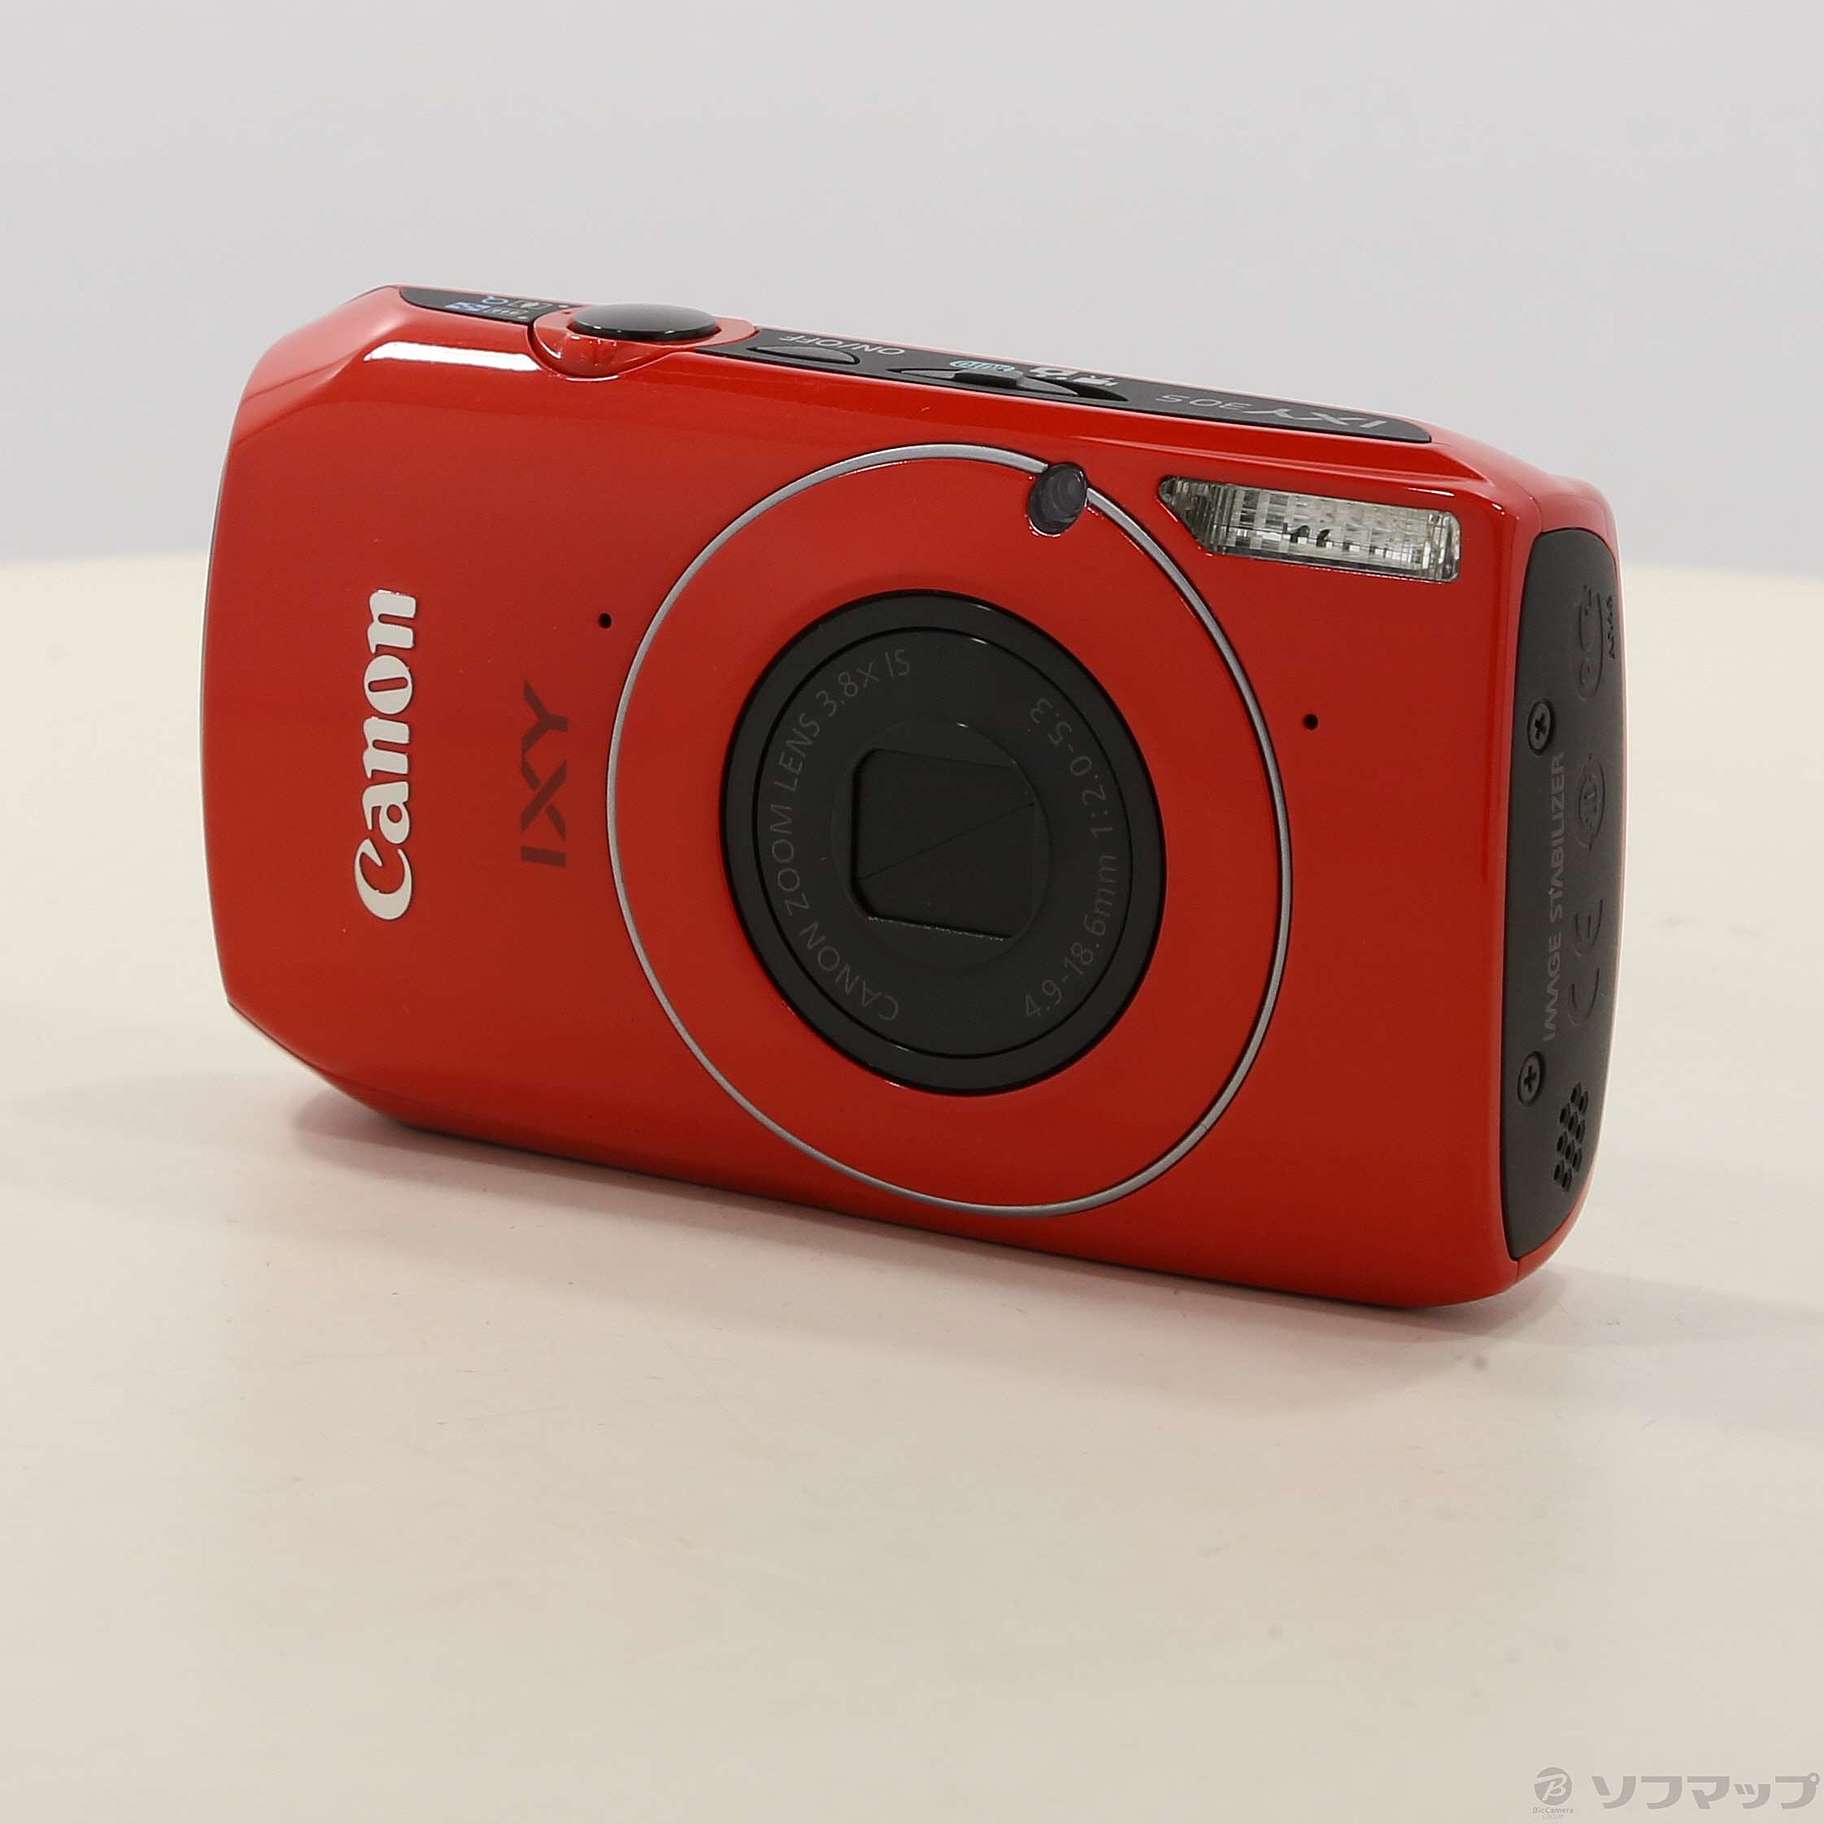 11,520円キャノン デジタルカメラ CANON IXY 30S レッド